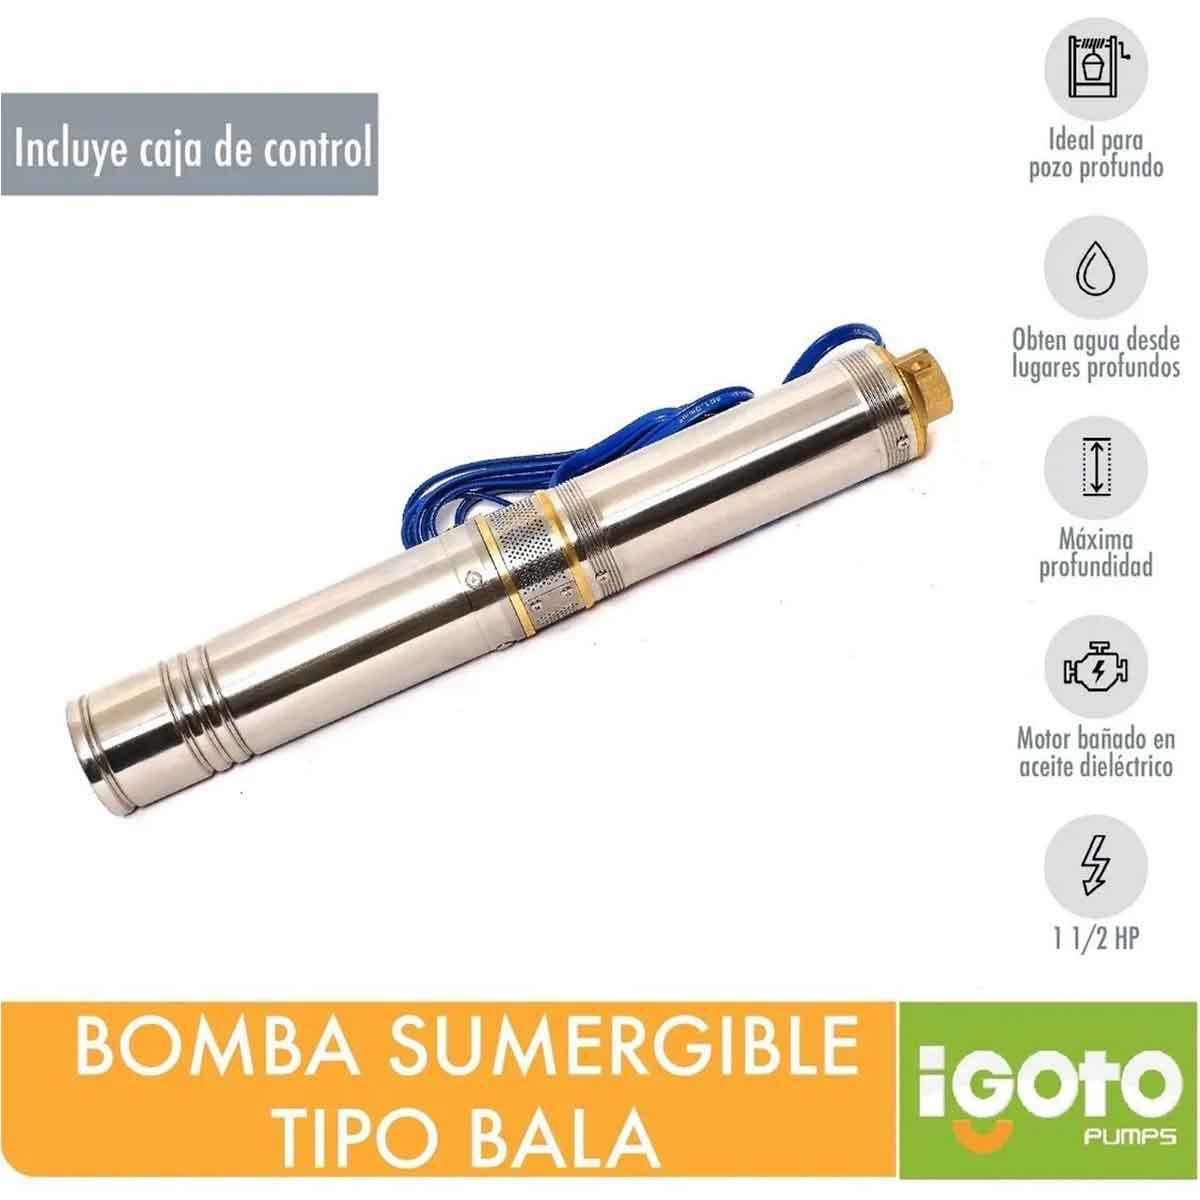 Bomba Sumergible Tipo Bala 1 1/2 Hp 1100W Tba87 Igoto IGOTO PUMPS Ferreabasto